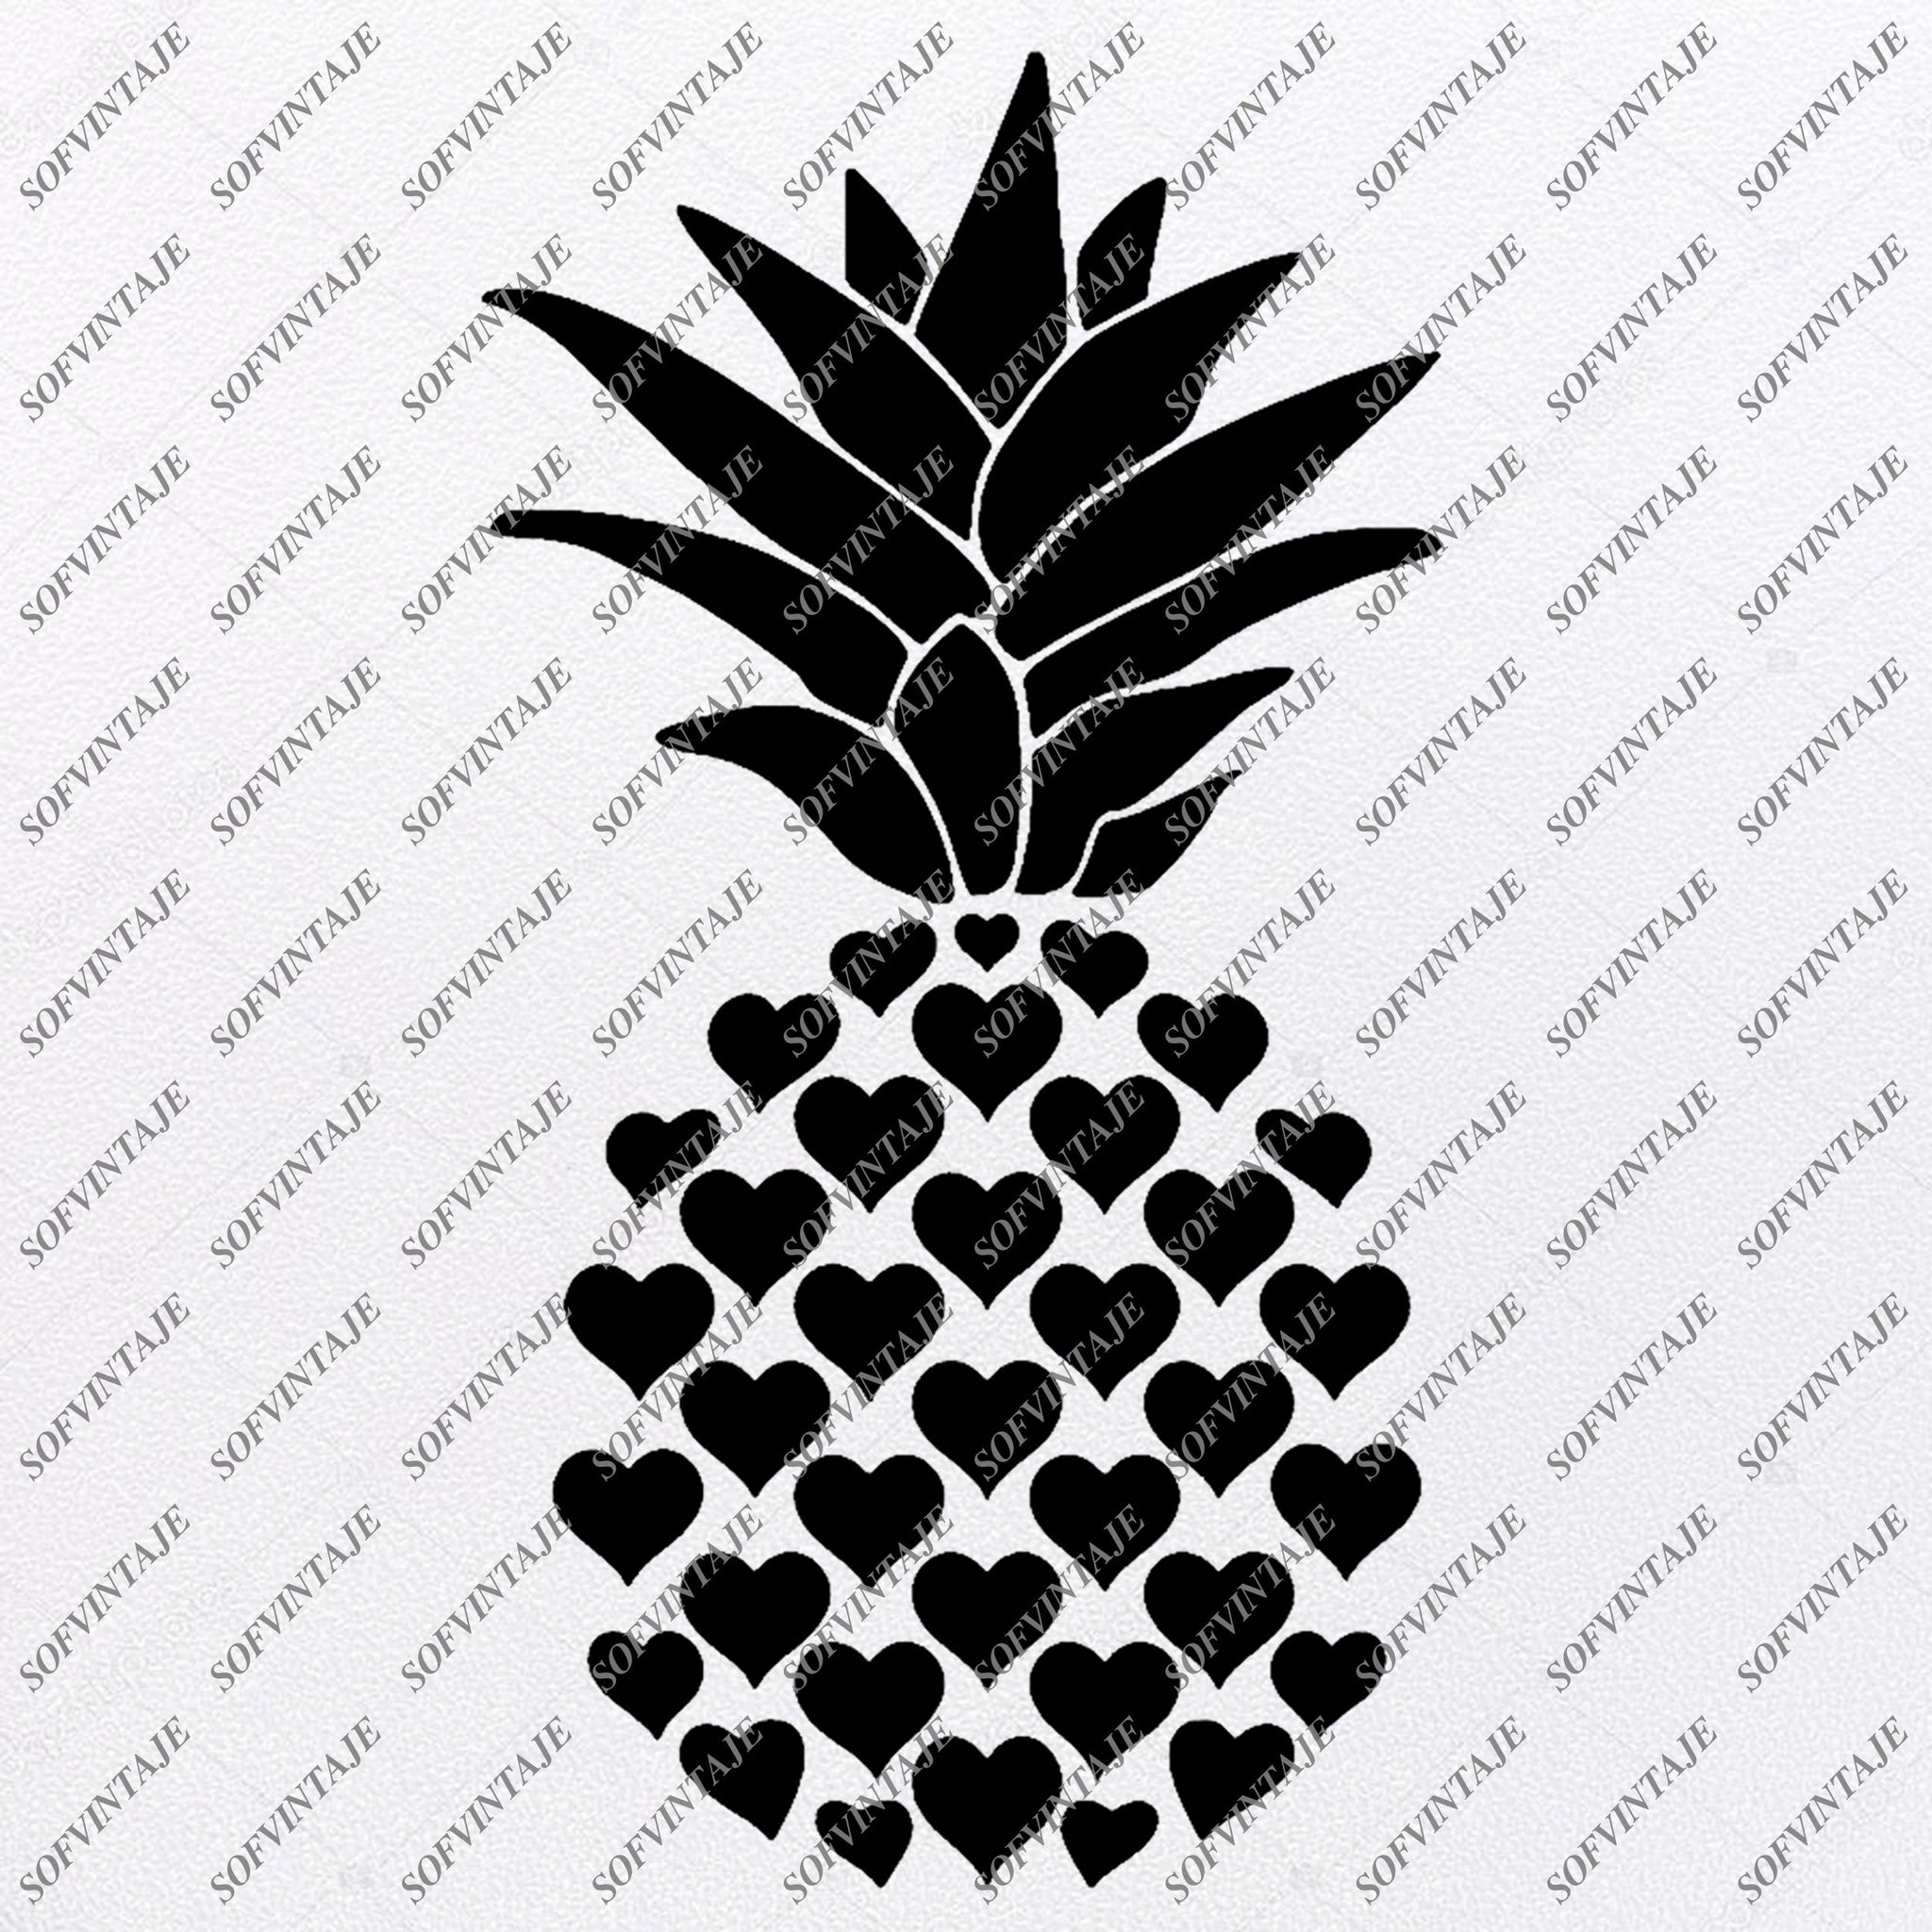 Download Pineapple Svg File Pineapple Svg Pineapple Png Fruit Svg Pinea Sofvintaje SVG, PNG, EPS, DXF File